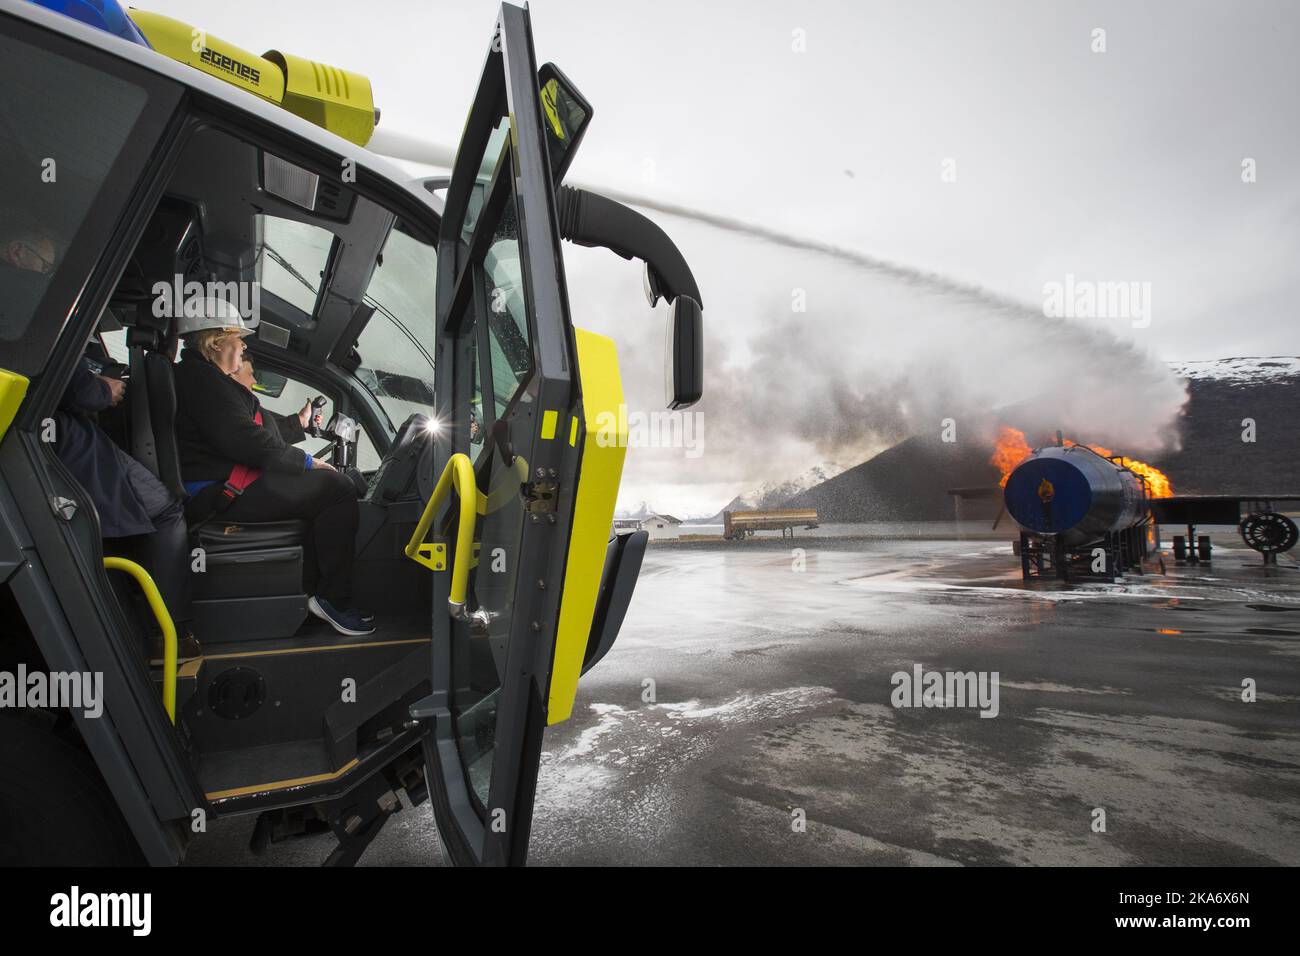 Harstad, Norvegia 20170519. Il primo ministro Erna Solberg spegne un incendio di un aeroplano con un cannone ad acqua dal tetto di un camion dei pompieri durante una visita alla scuola dei vigili del fuoco norvegese a Tjeldsund vicino Harstad. Foto: Heiko Junge / NTB scanpix Foto Stock